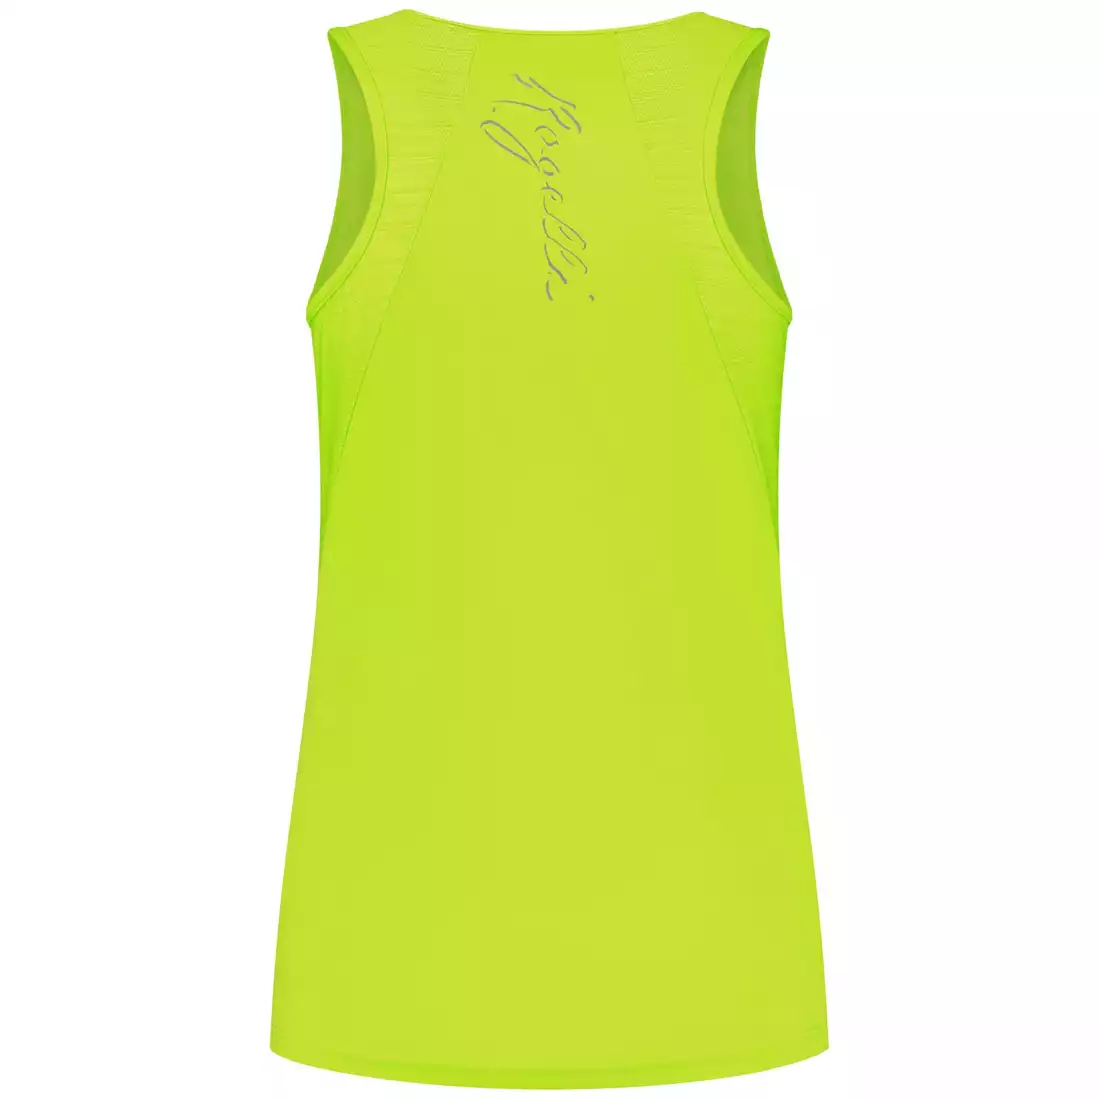 Rogelli CORE vestă de alergare pentru femei, galben fluor